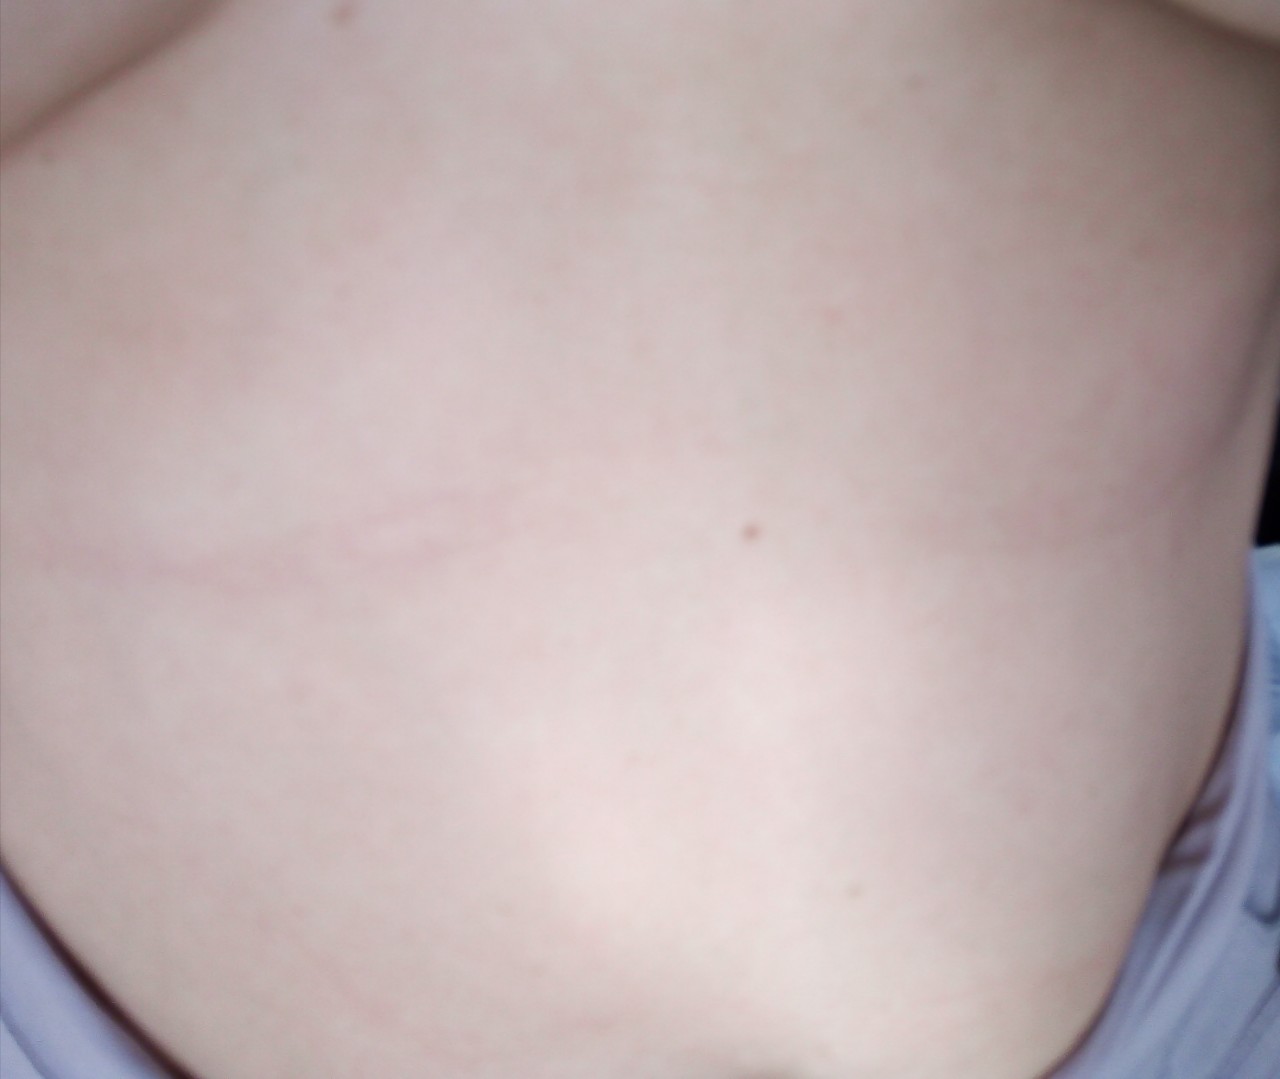 шишка на левой груди у женщин фото 44